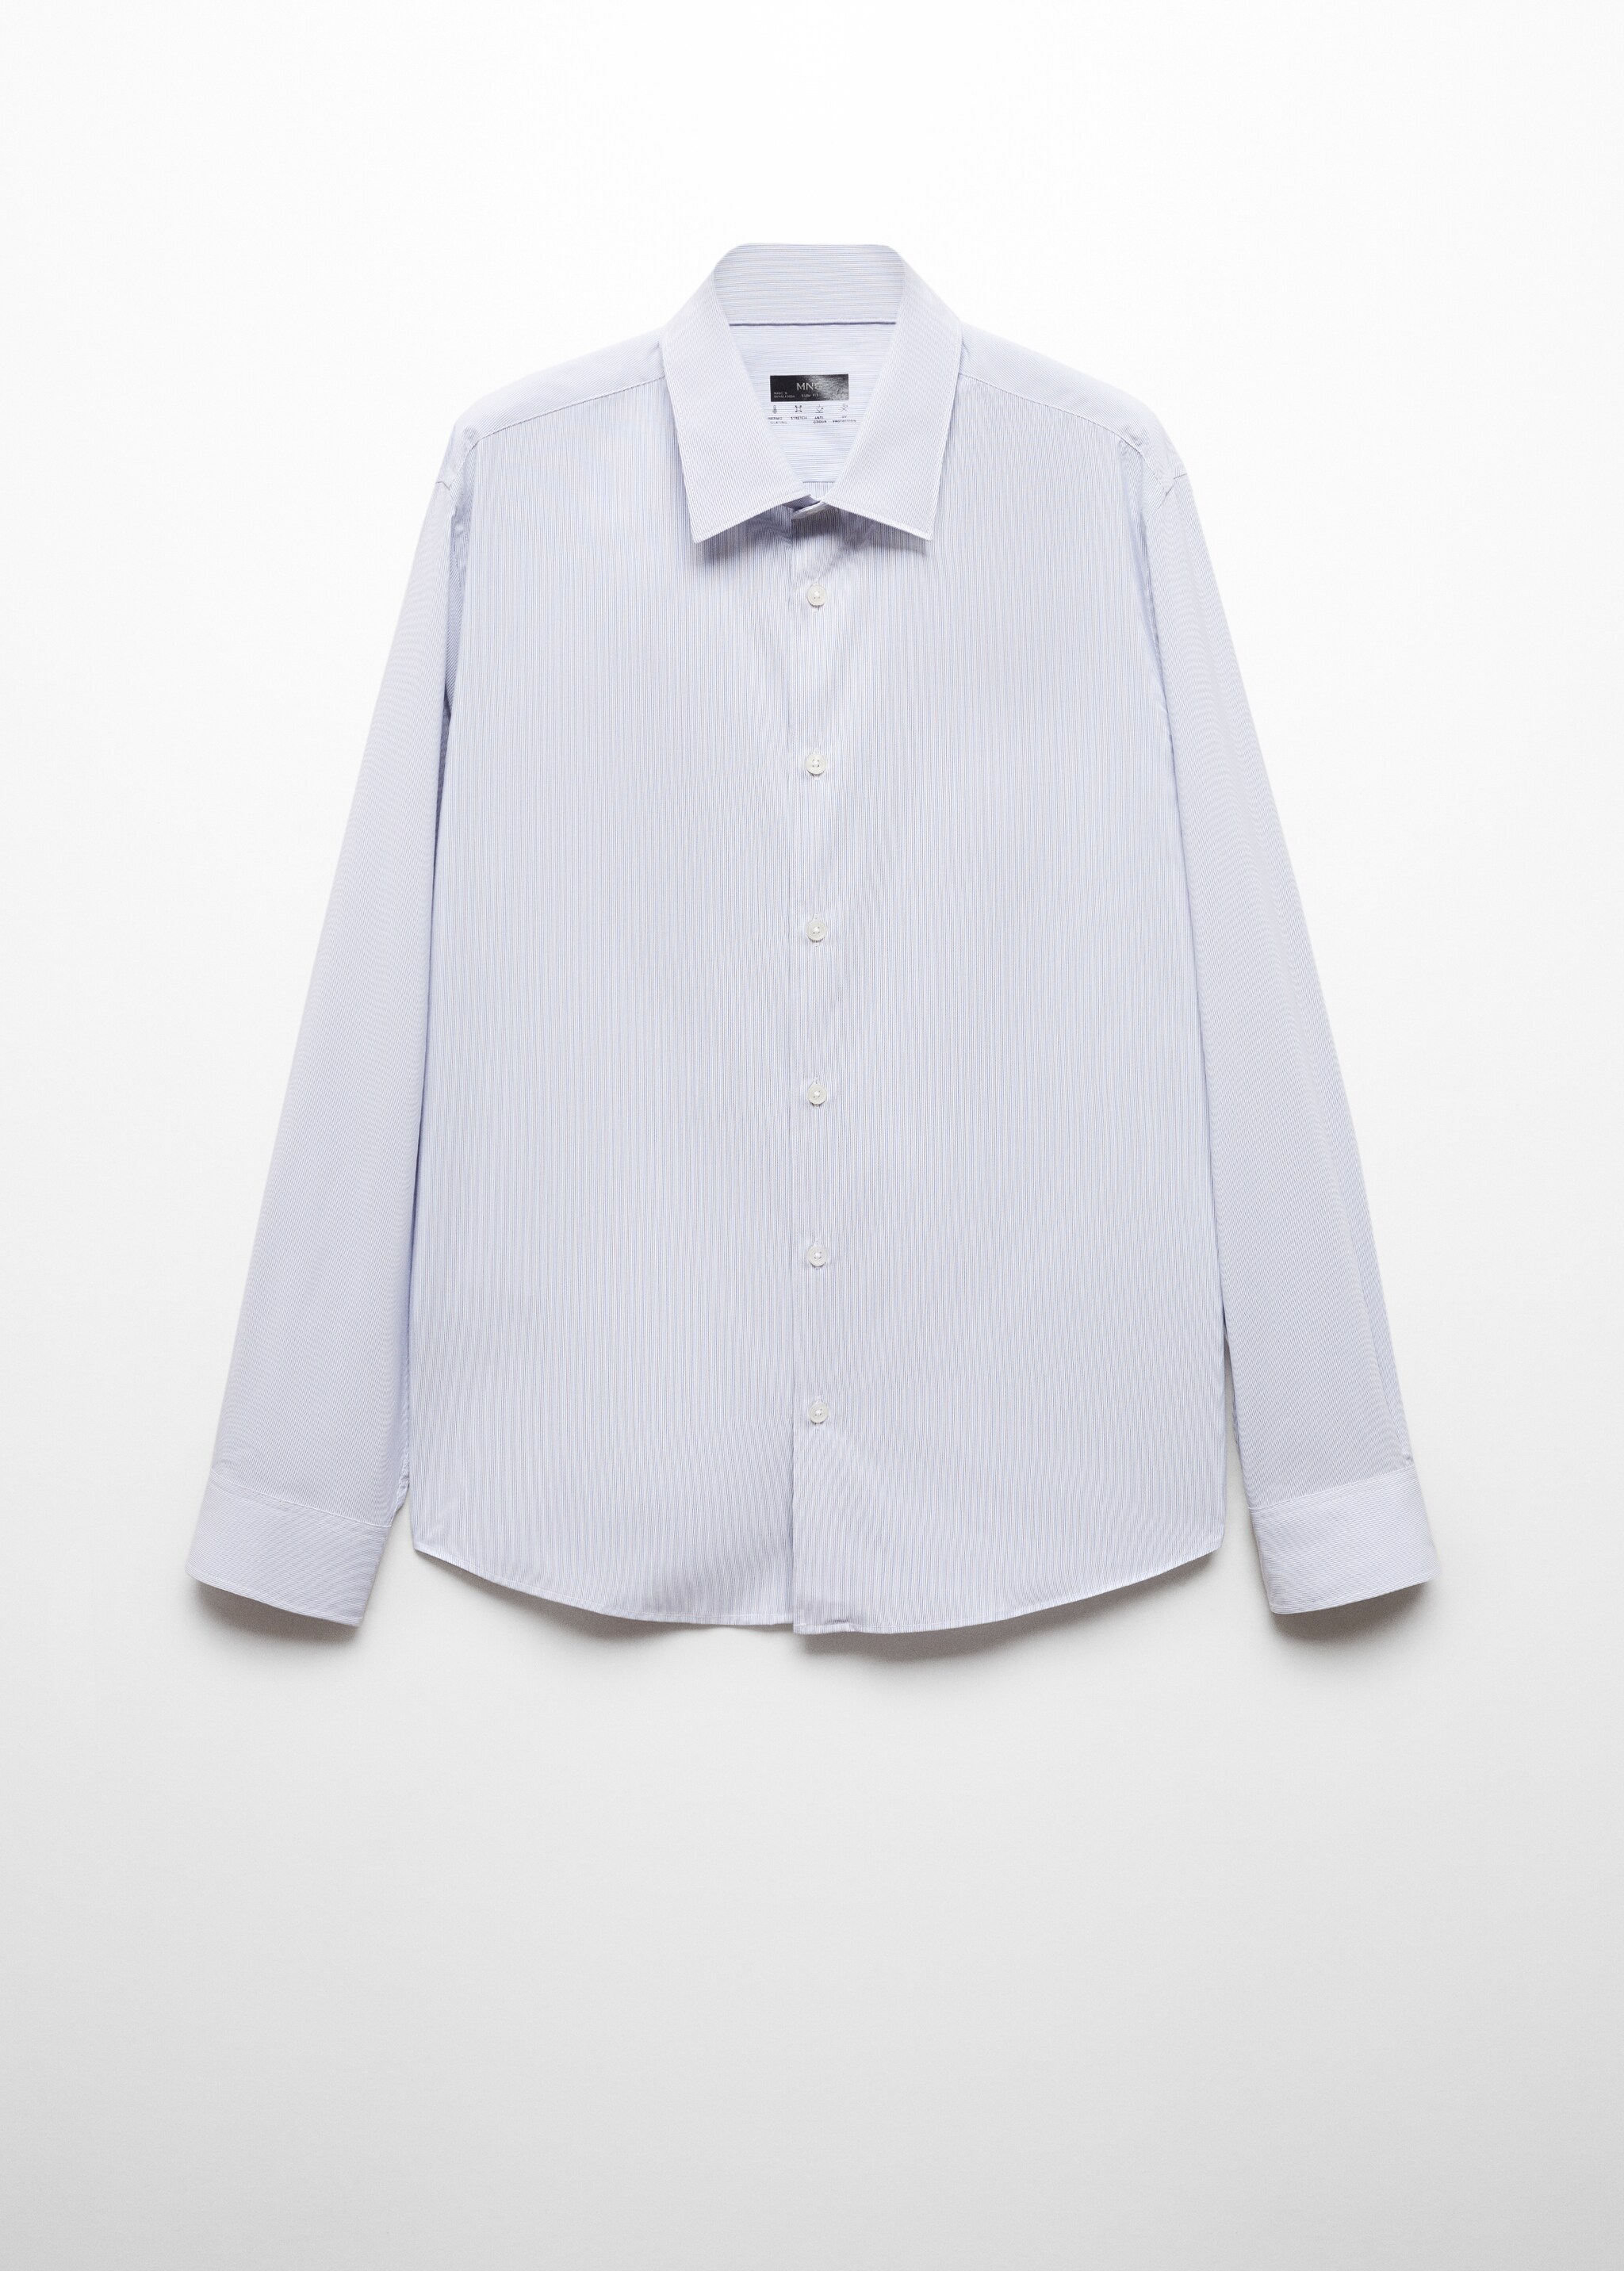 Рубашка slim fit из ткани стретч в полоску - Изделие без модели